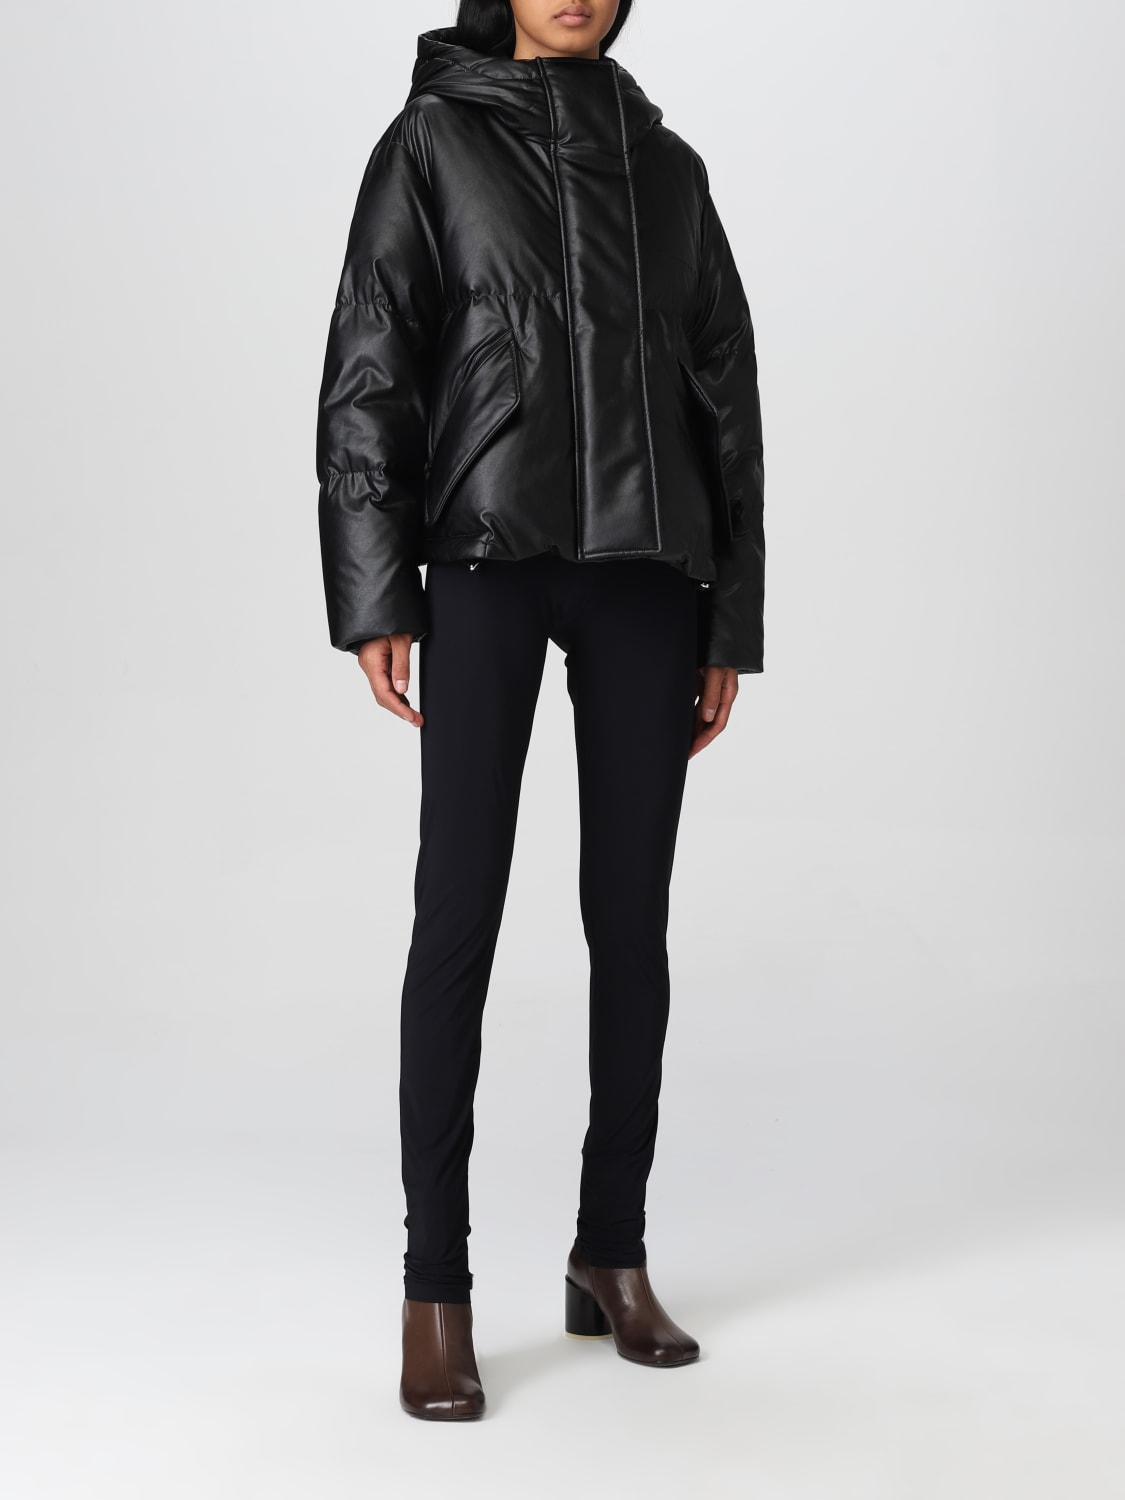 Mm6 Maison Margiela Outlet: jacket for woman - Black | Mm6 Maison